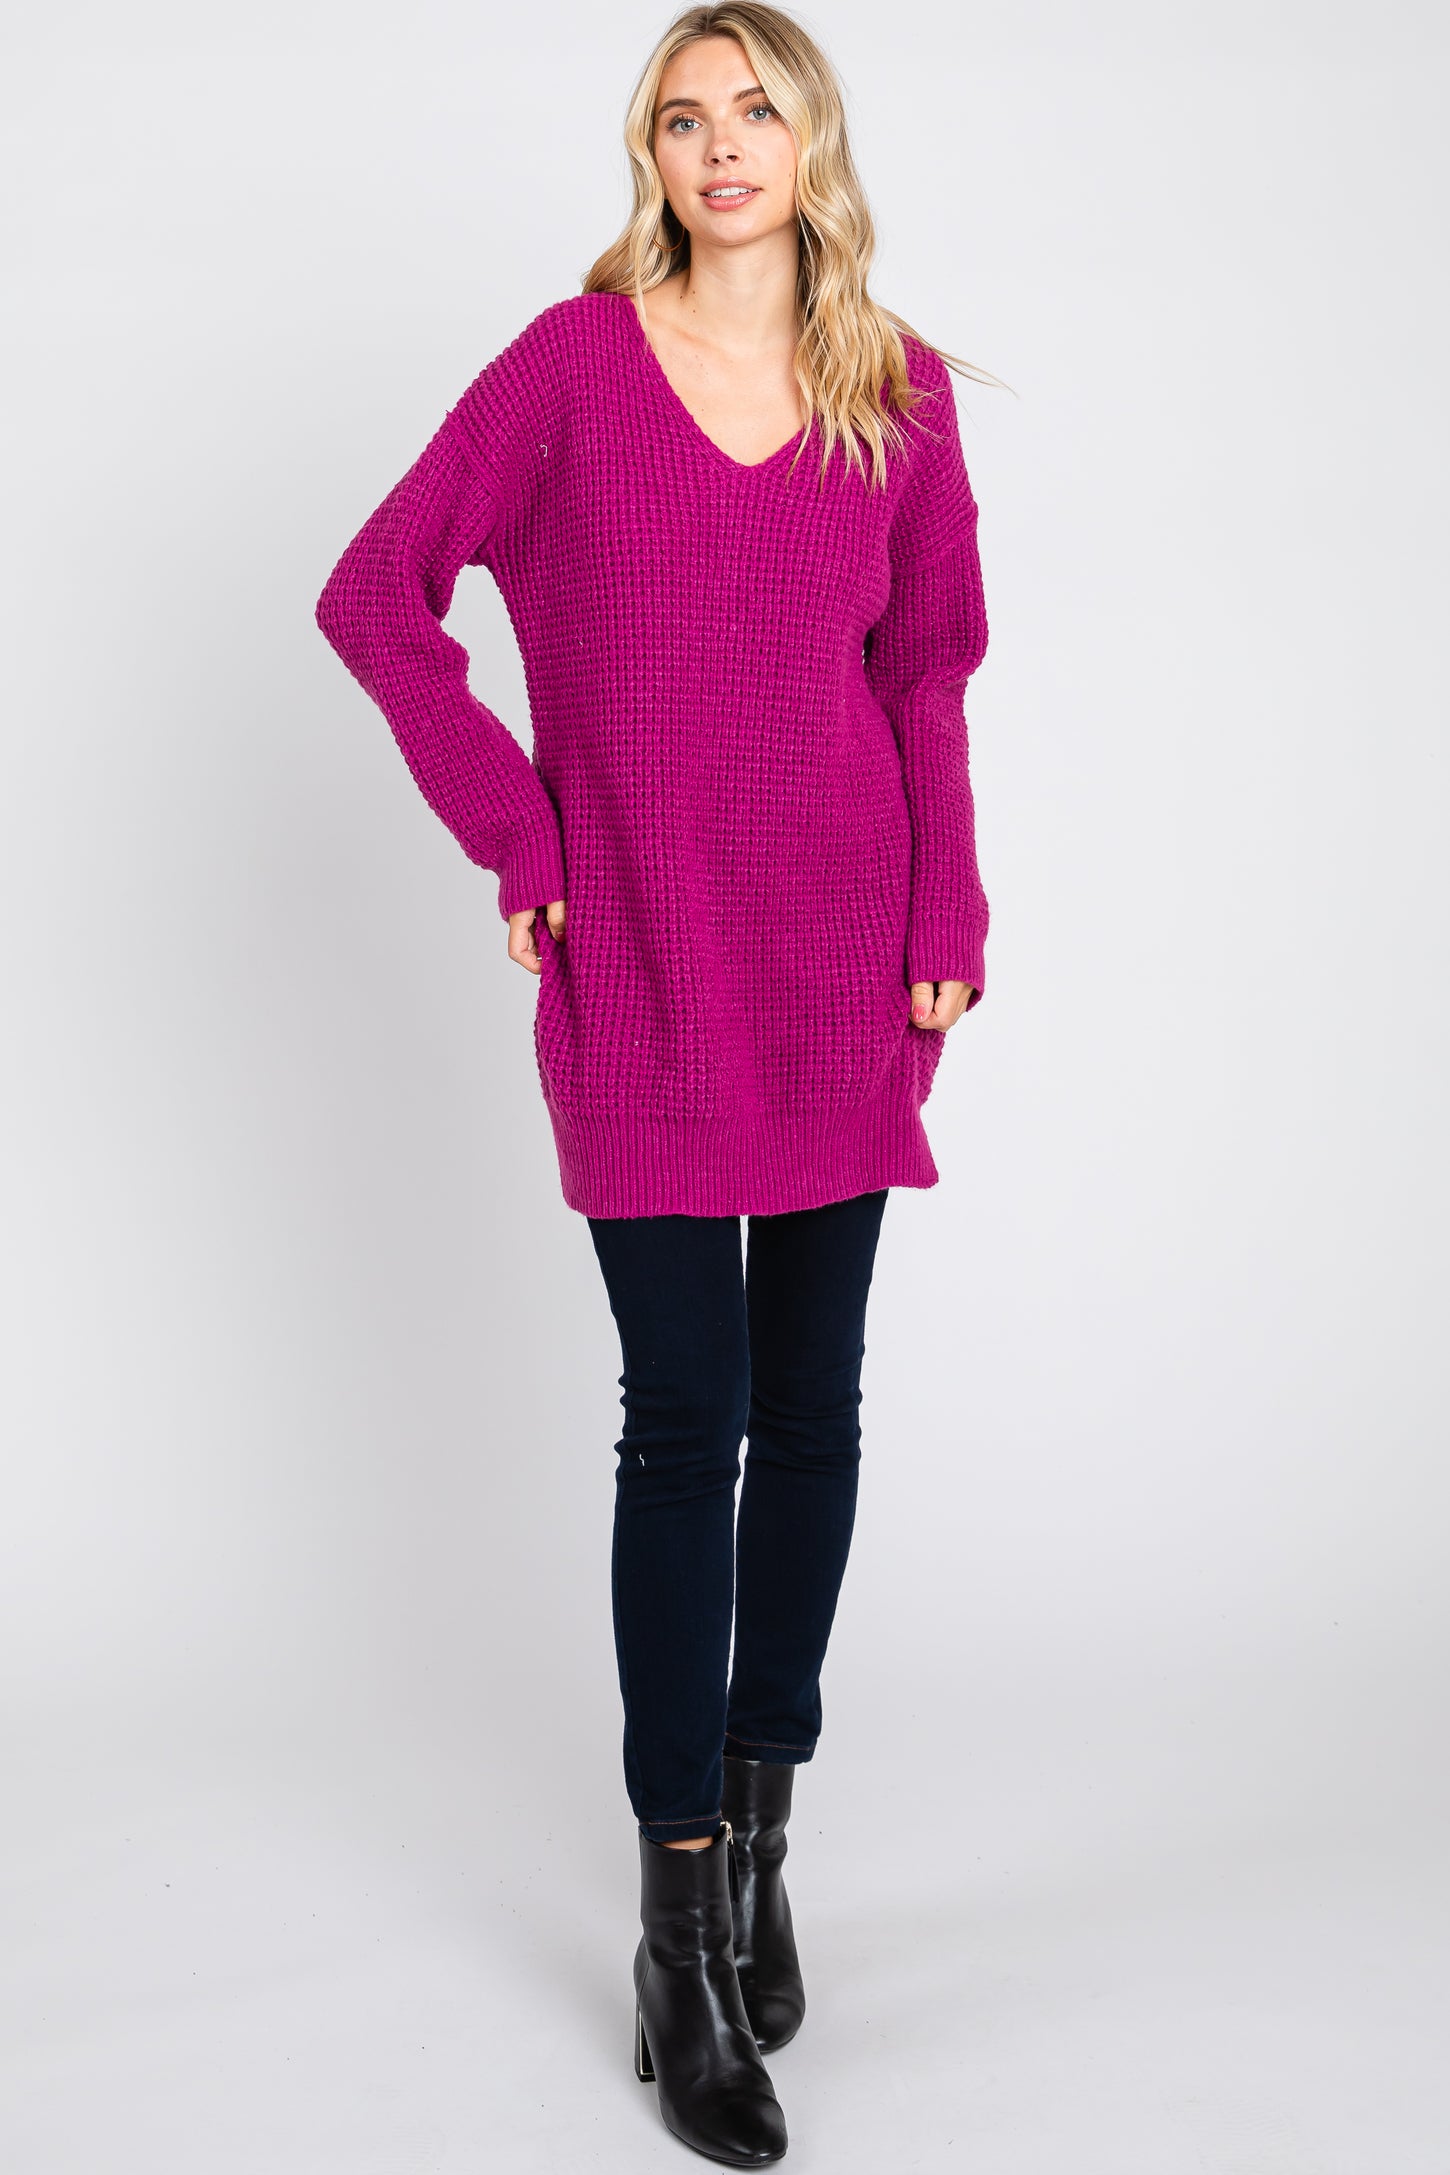 Magenta Chunky Knit V-Neck Side Slit Long Maternity Sweater